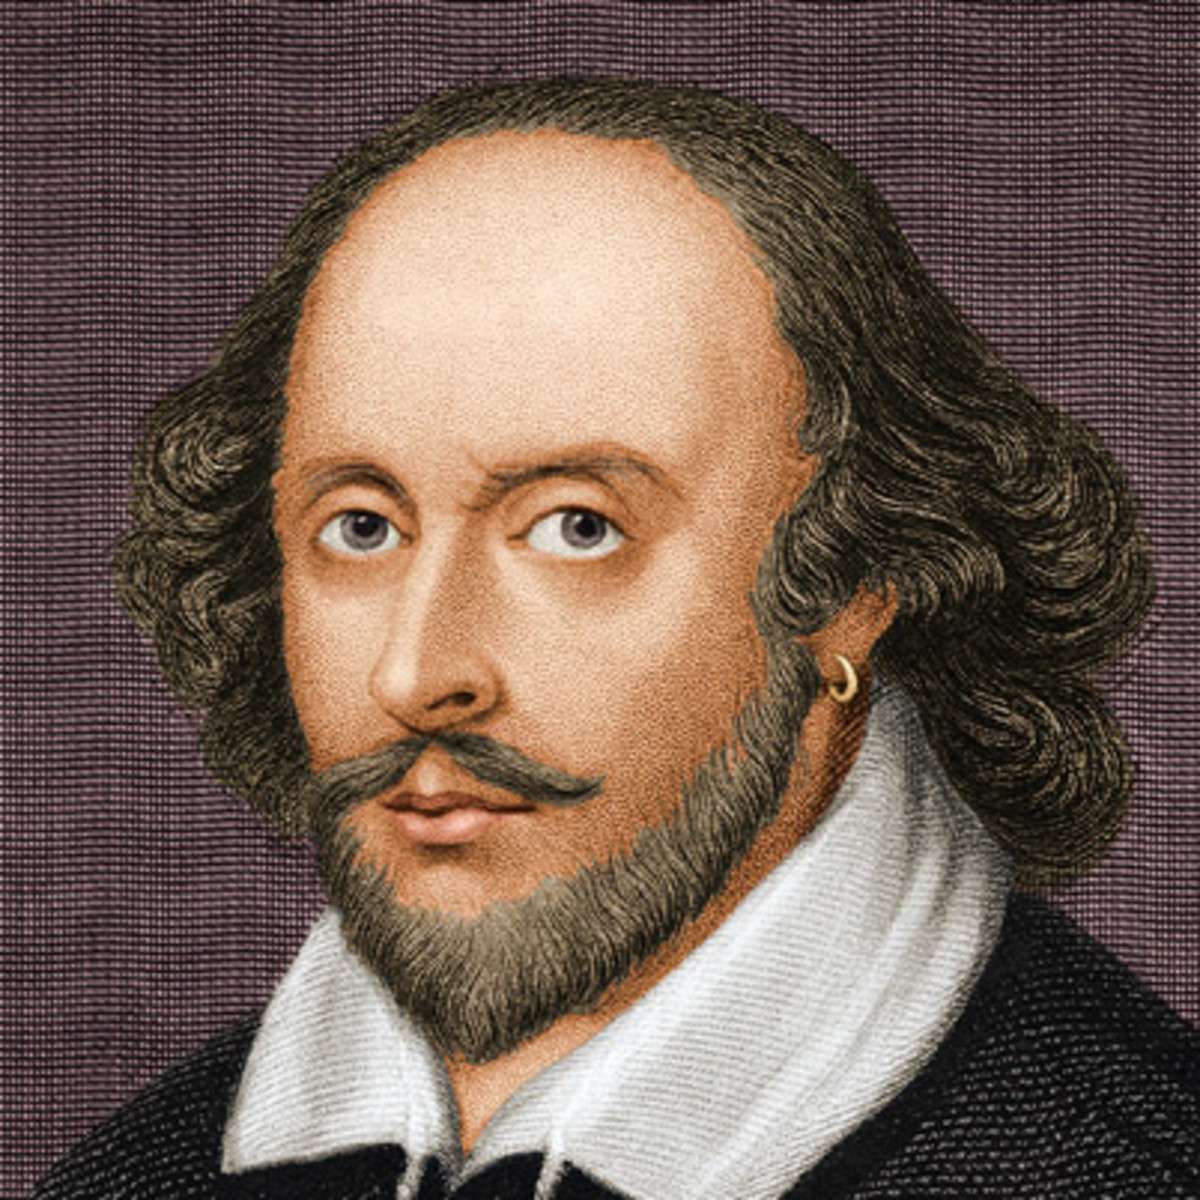 क्या शेक्सपियर भी नस्लीय भेदभाव को मानते थे?